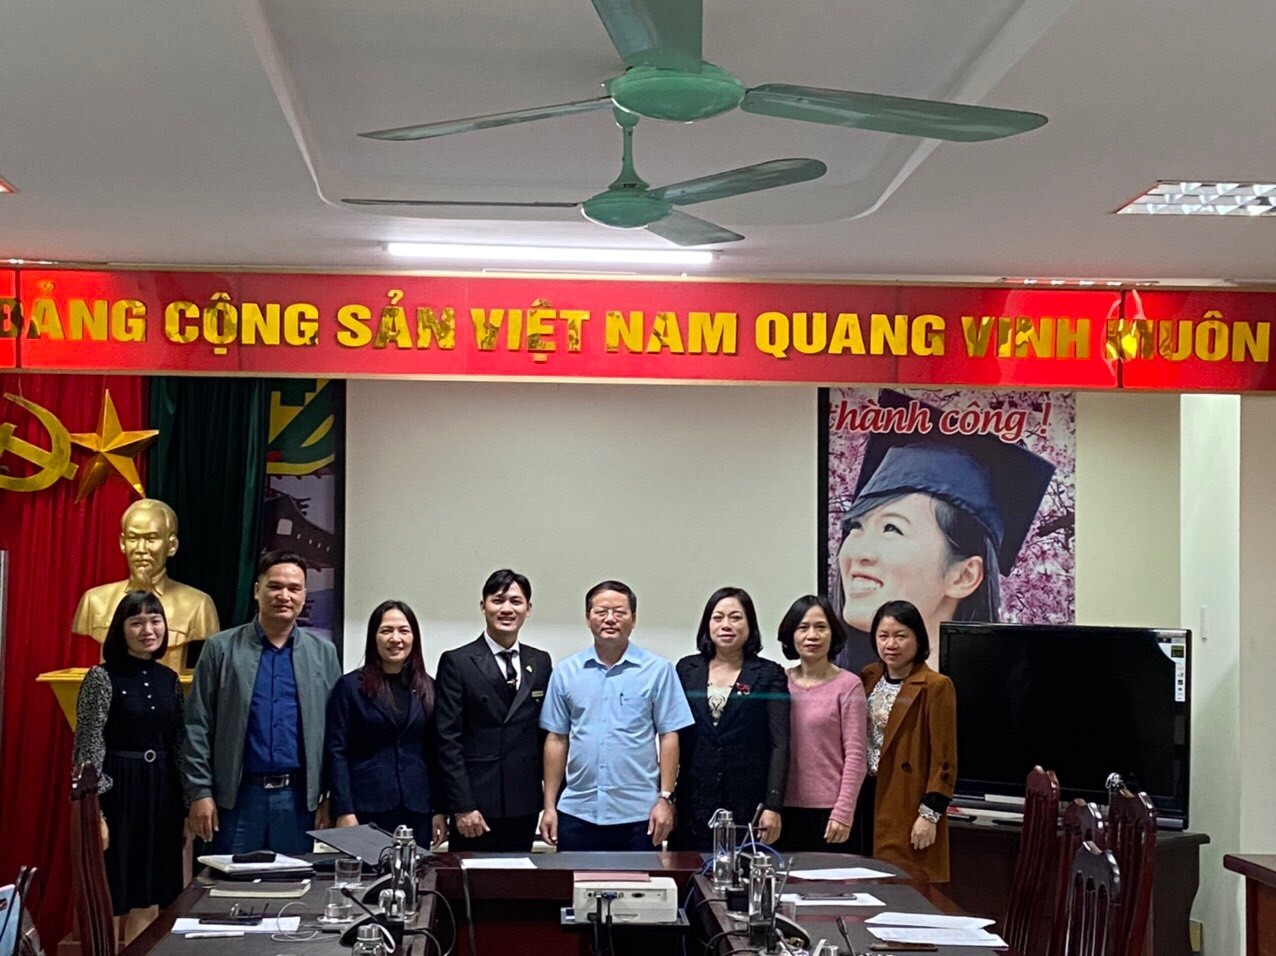 Công ty Cổ phần Đào tạo Huấn luyện Nghiệp vụ Hàng không Việt Nam ký kết Hợp đồng hợp tác tuyển sinh với Trung tâm Dịch vụ việc làm tỉnh Thái Bình